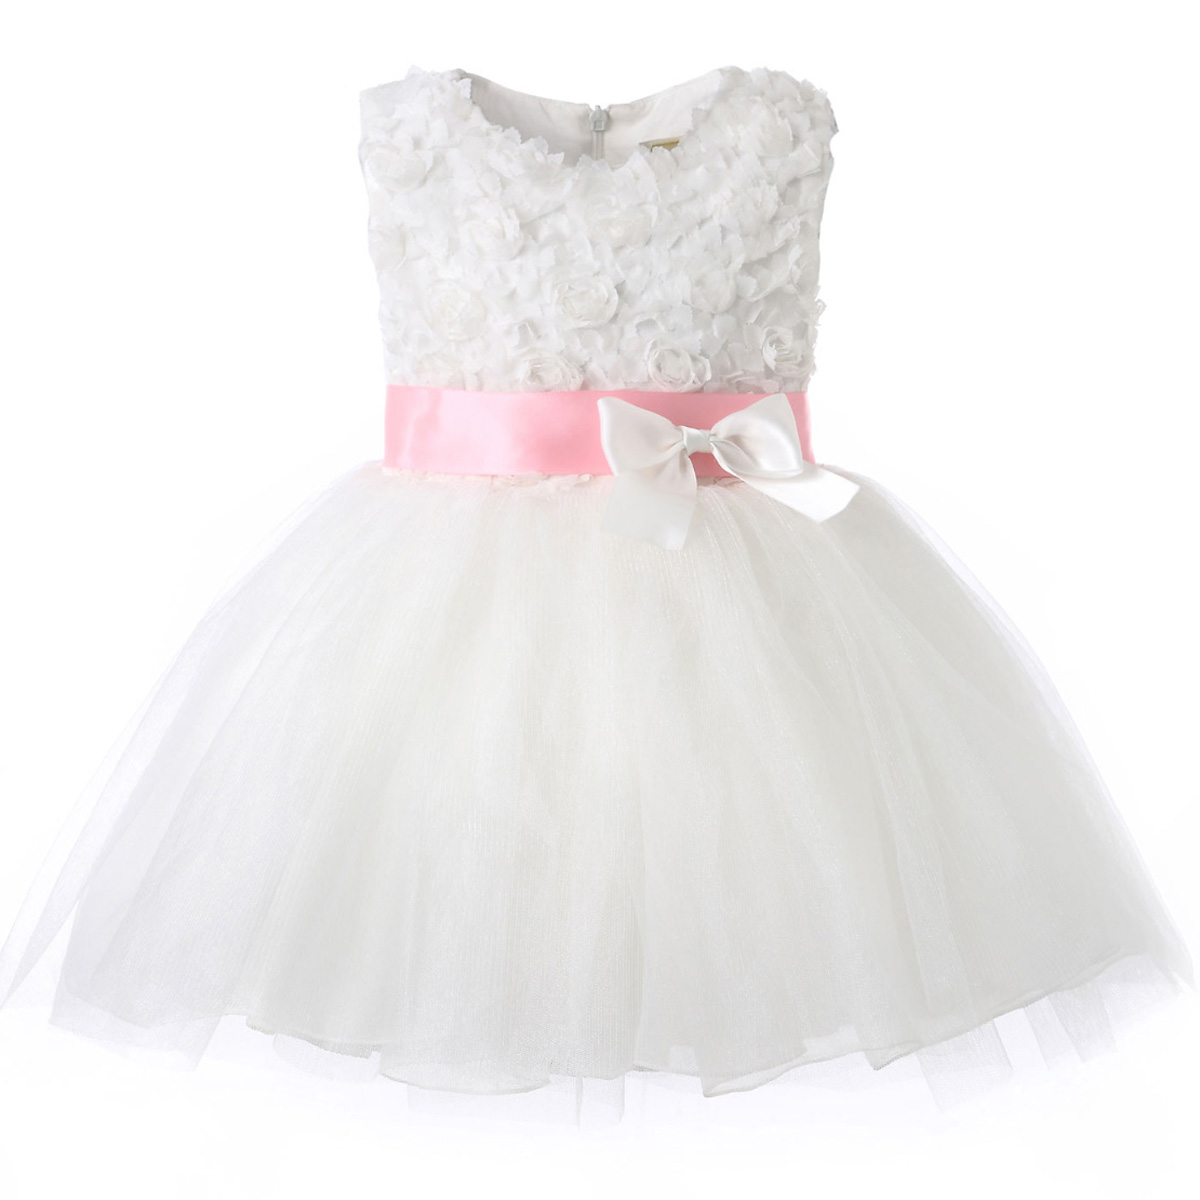 Hanakimi®Girl White Short Sleeveless Ornate Princess Dresses K15054 